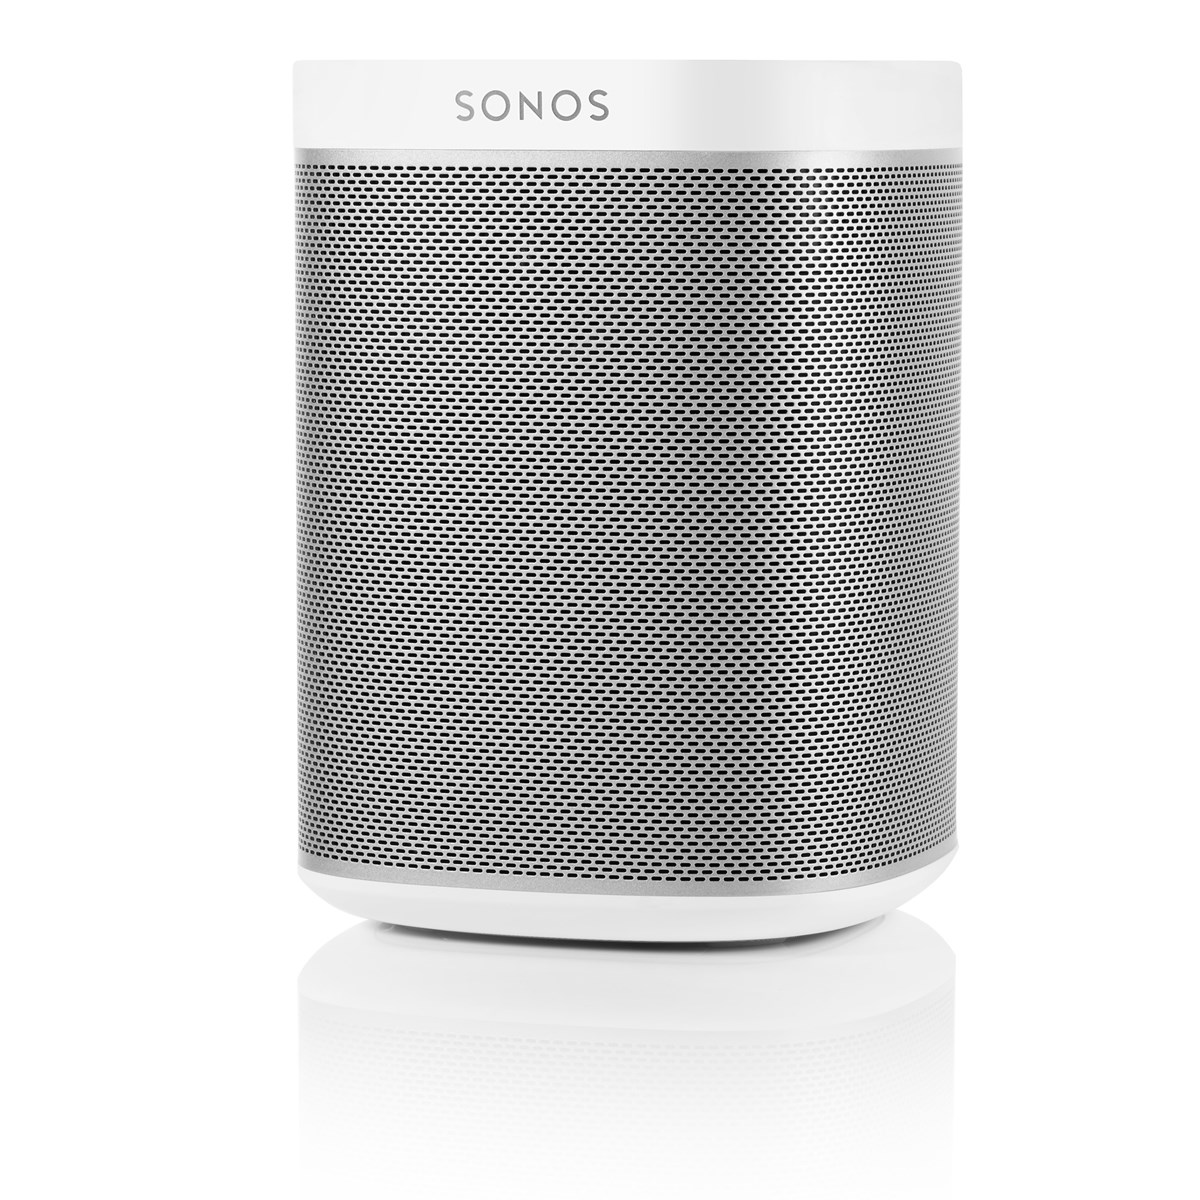 Denne lille Sonos PLAY:1 passer godt i køkkenet eller badeværelset. Trods dens kompakte størrelse er lyden utrolig kraftig og fylder meget